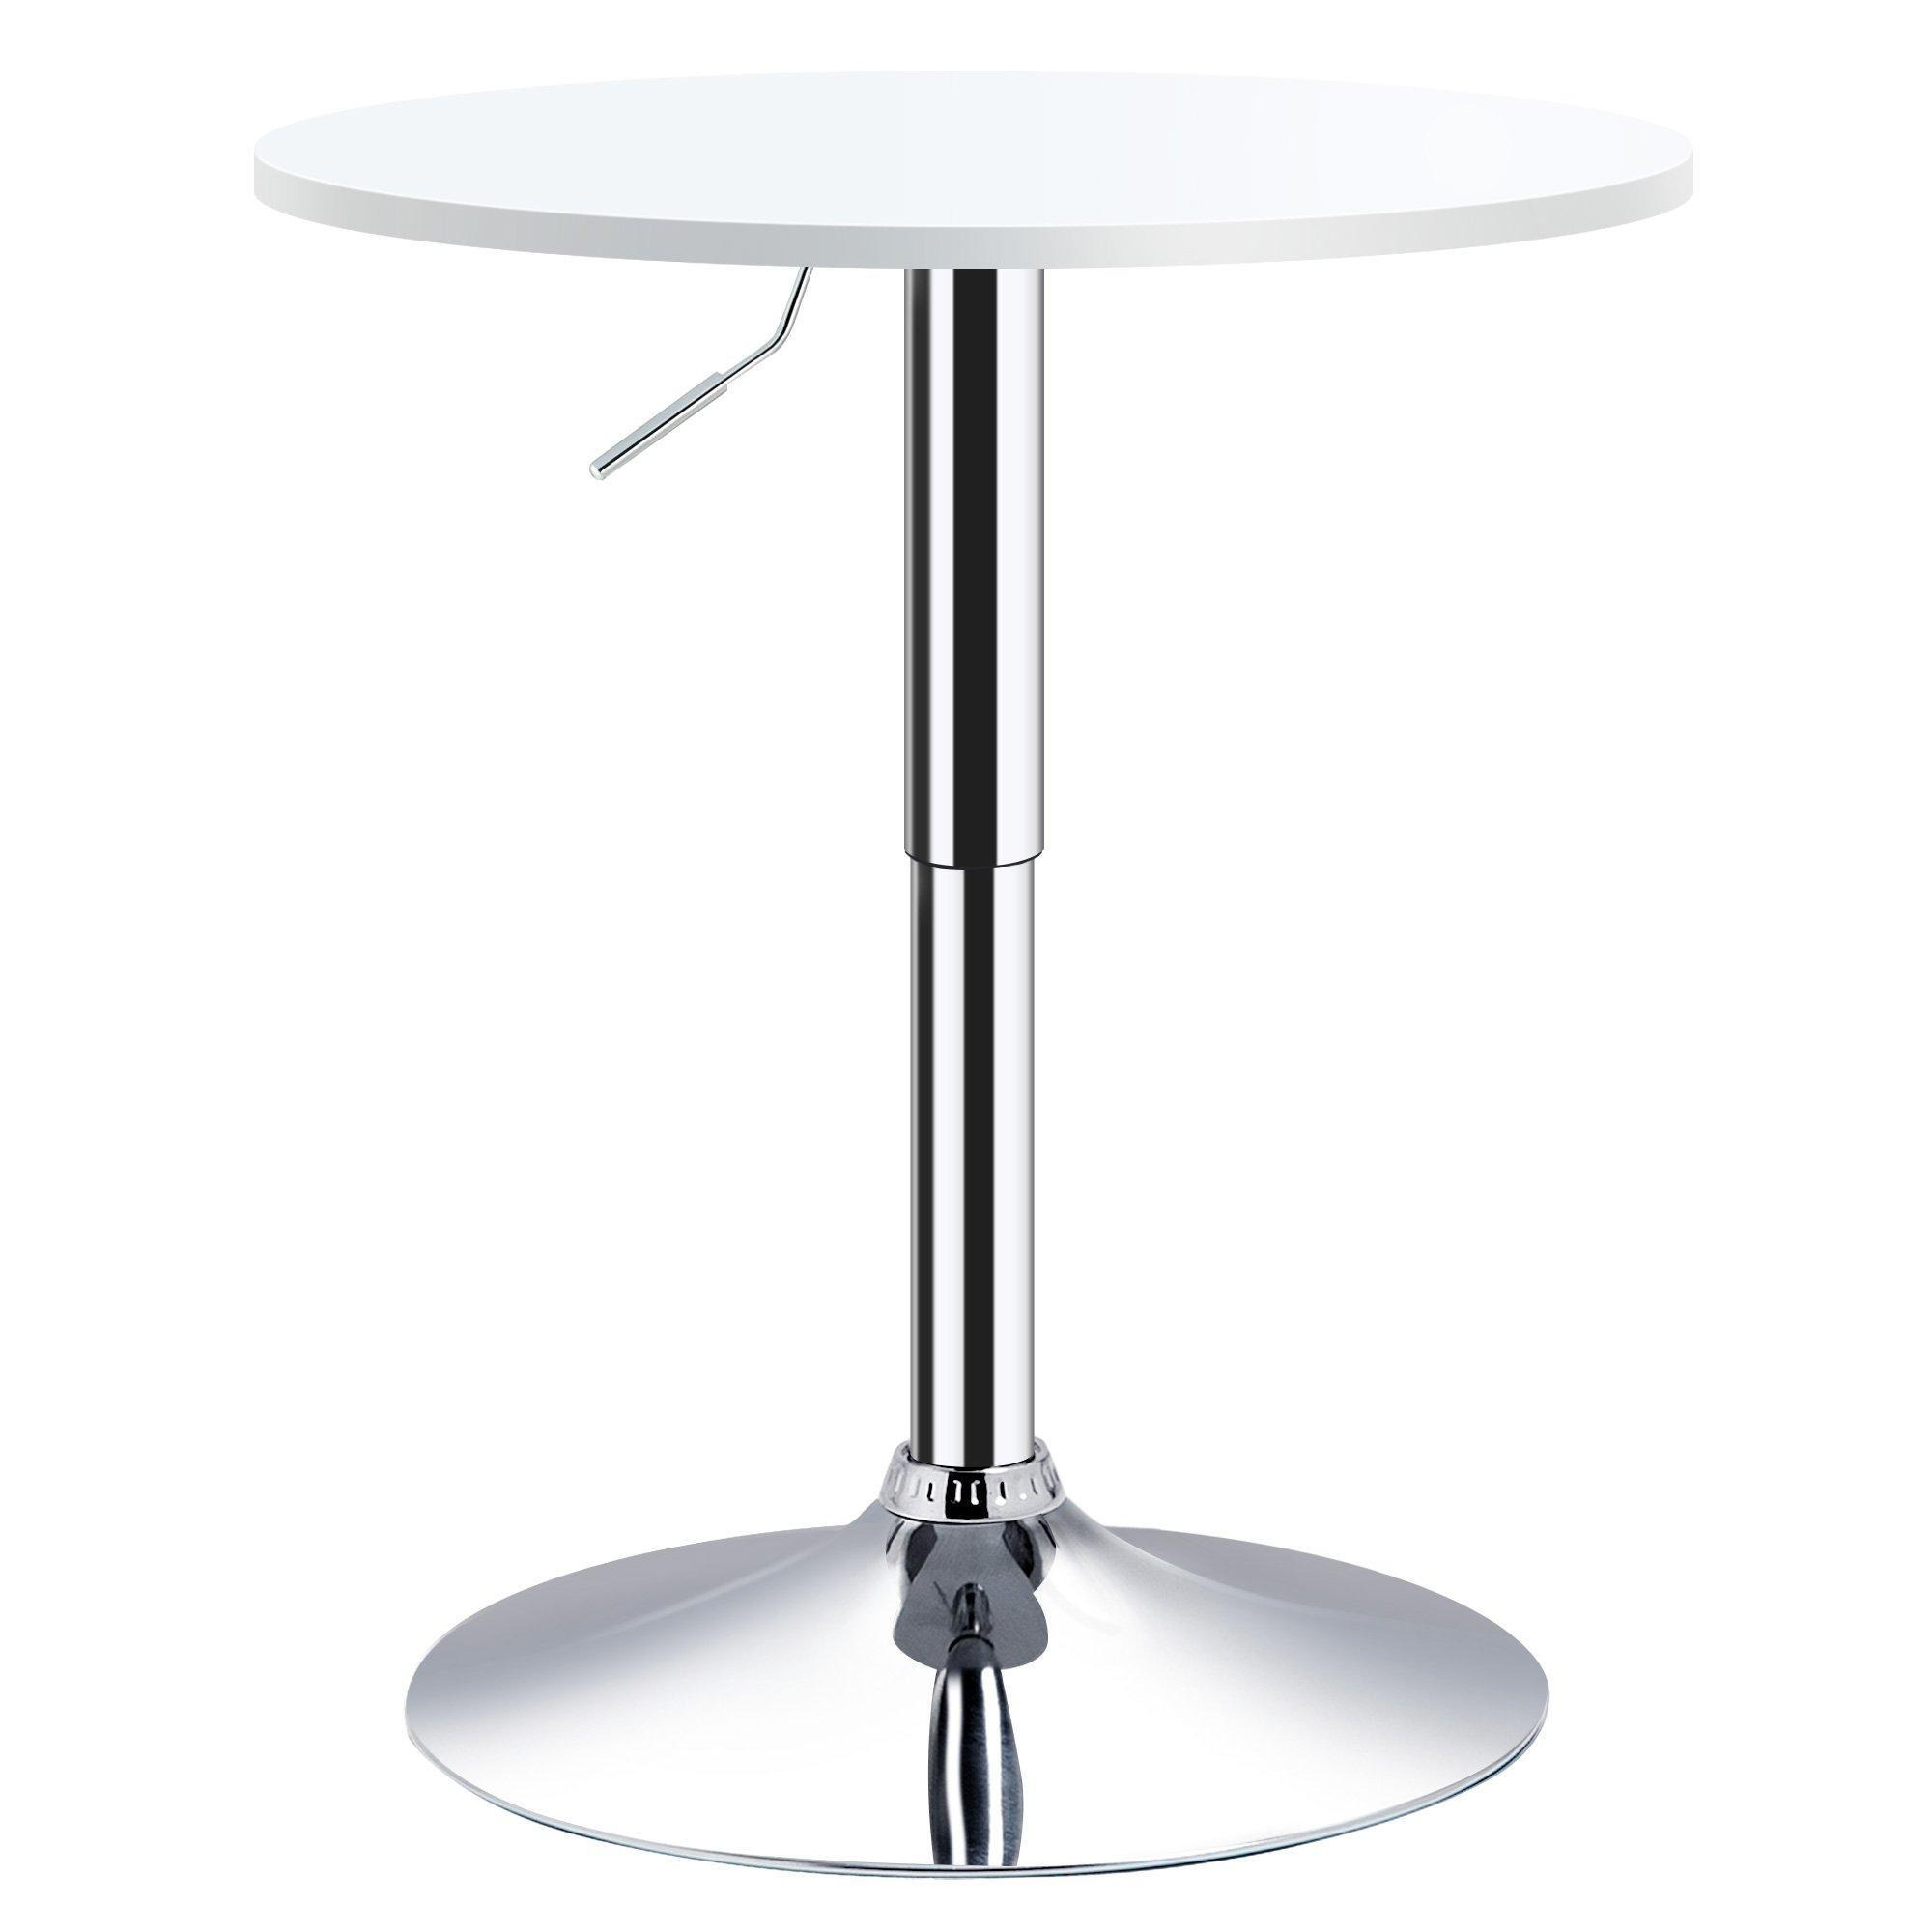 Φ60cm Adjustable Height Round Bar Table   Swivel Top Metal Frame - image 1